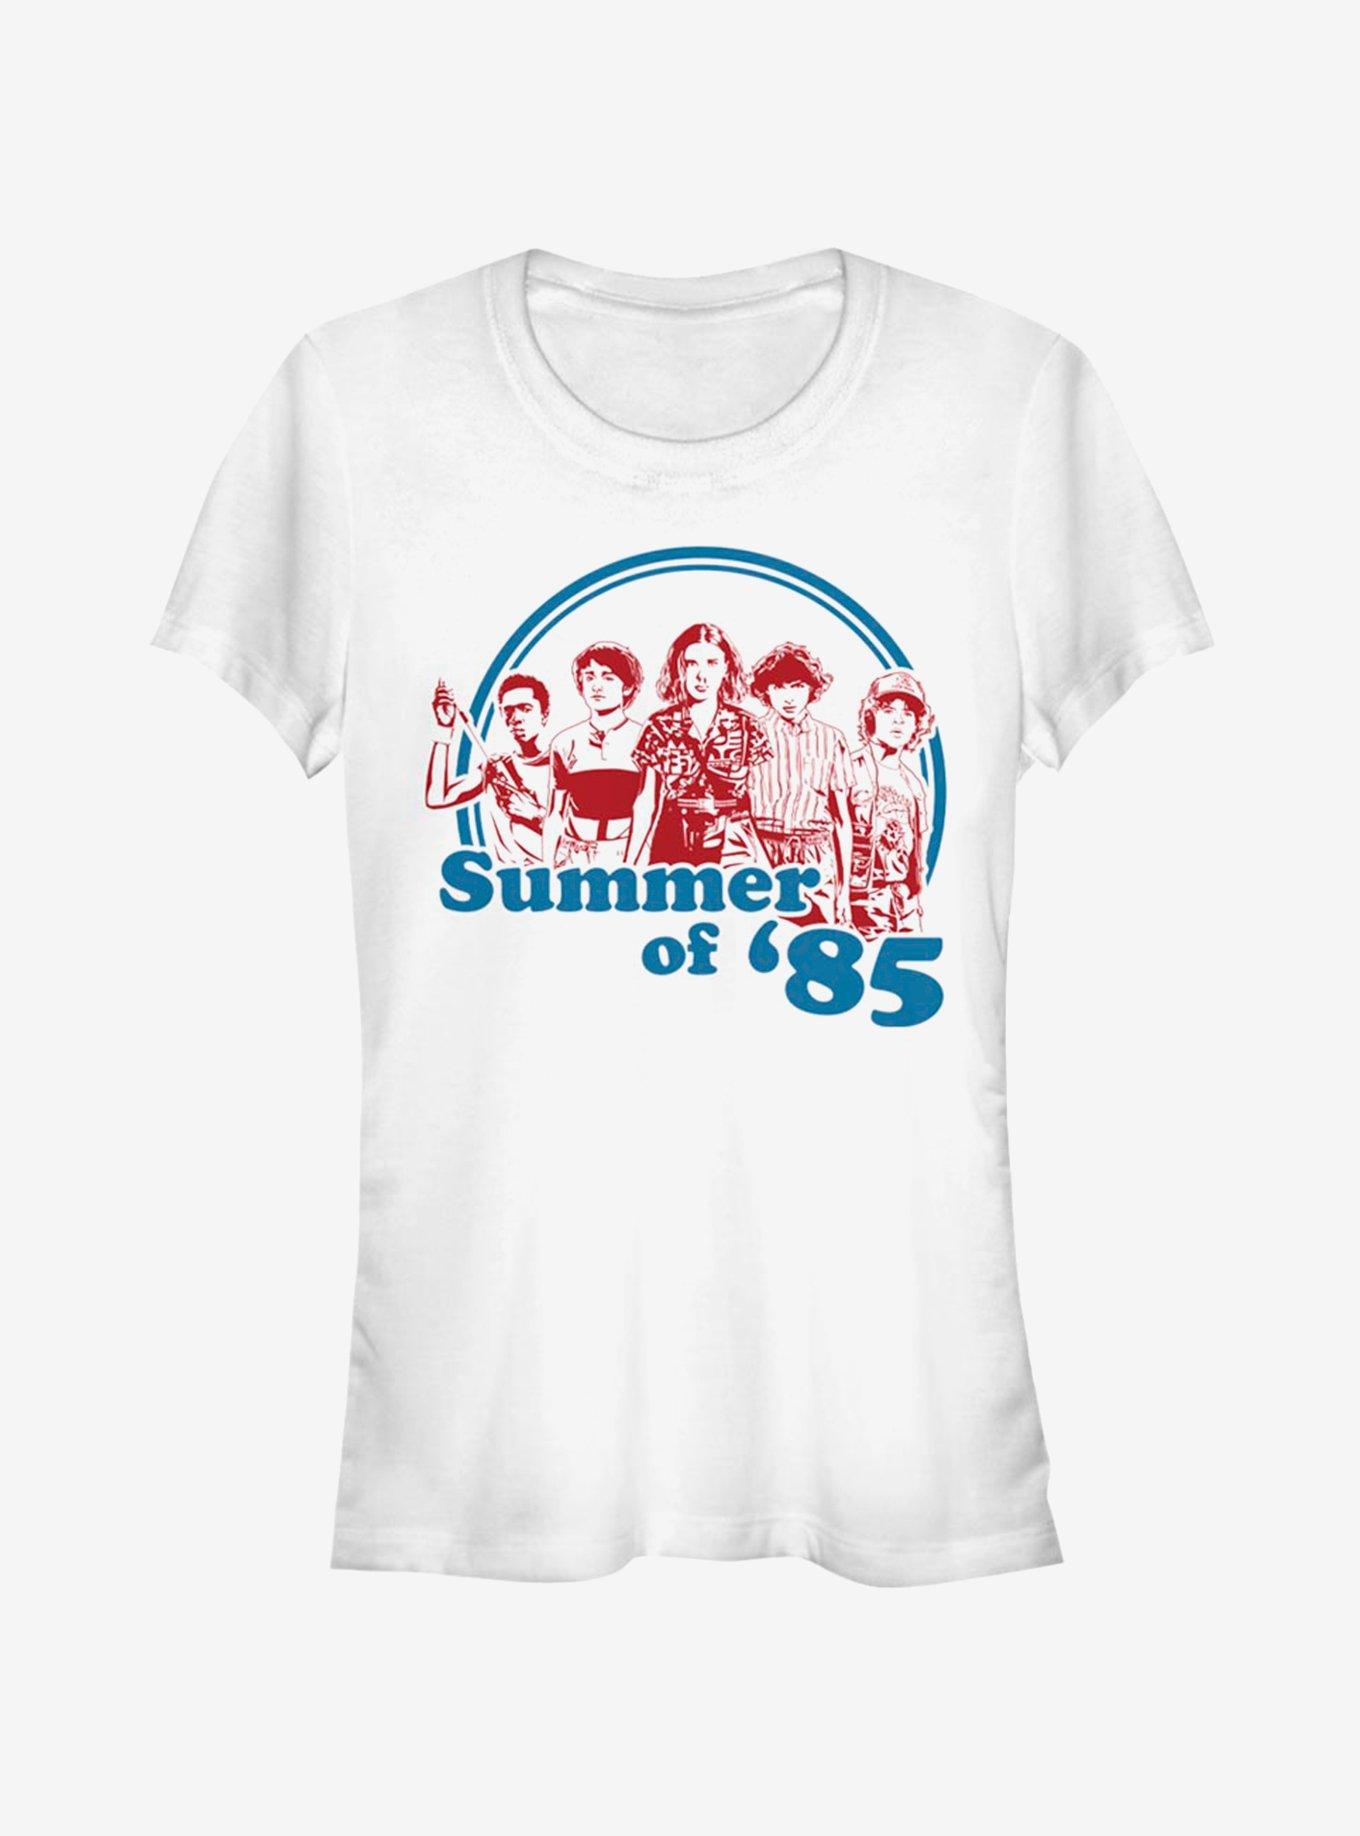 Stranger Things Summer of 85 Girls T-Shirt